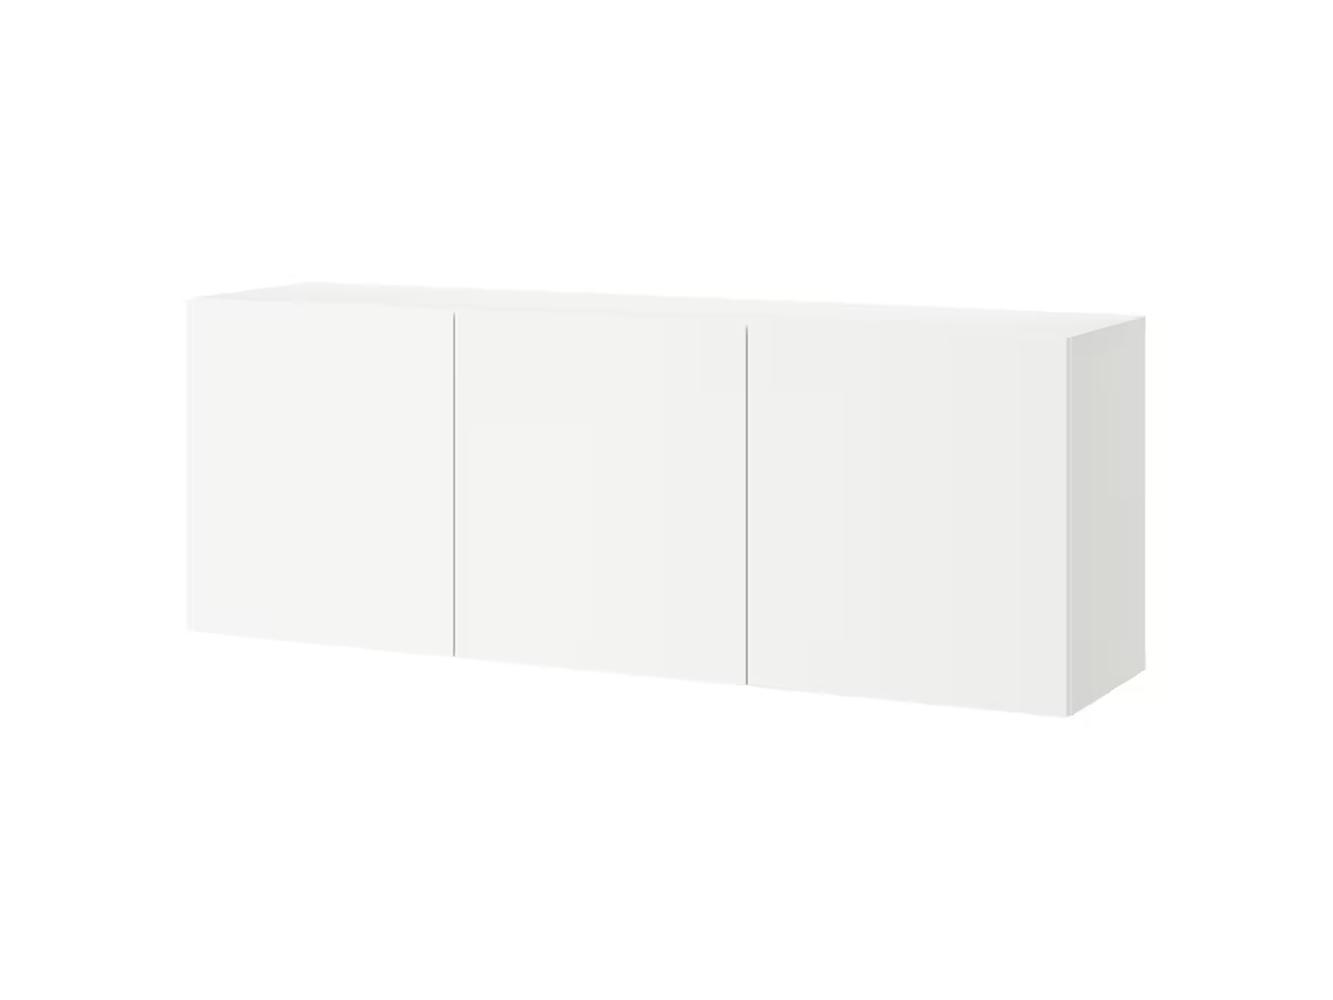 Навесной шкаф Беста 514 white ИКЕА (IKEA) изображение товара